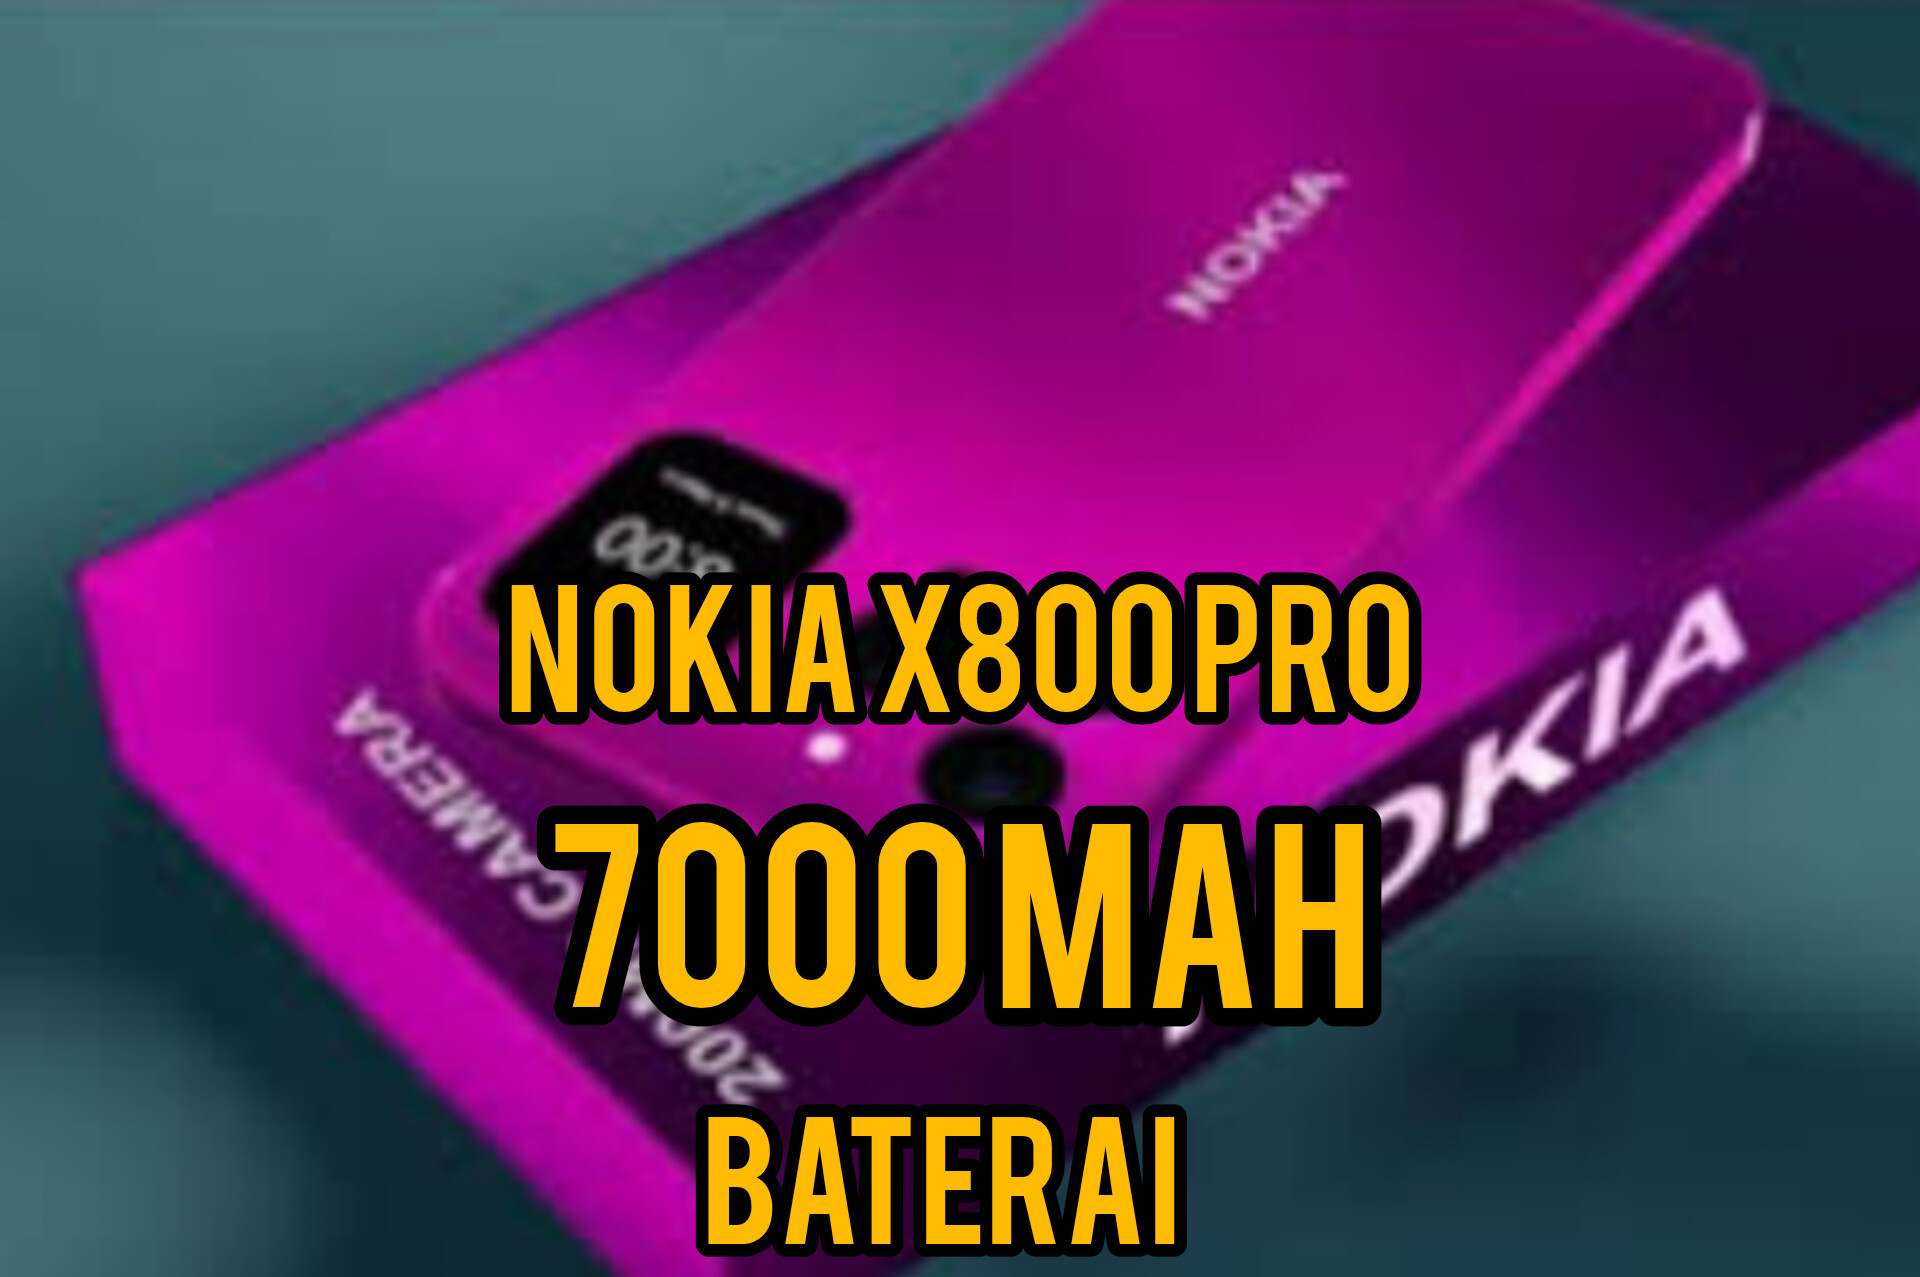 Cari Smartphone dengan Baterai Besar dan Tahan Lama? Nokia X800 Pro: Baterai 7000 mAh, Ponsel Lain Hanya 5000 